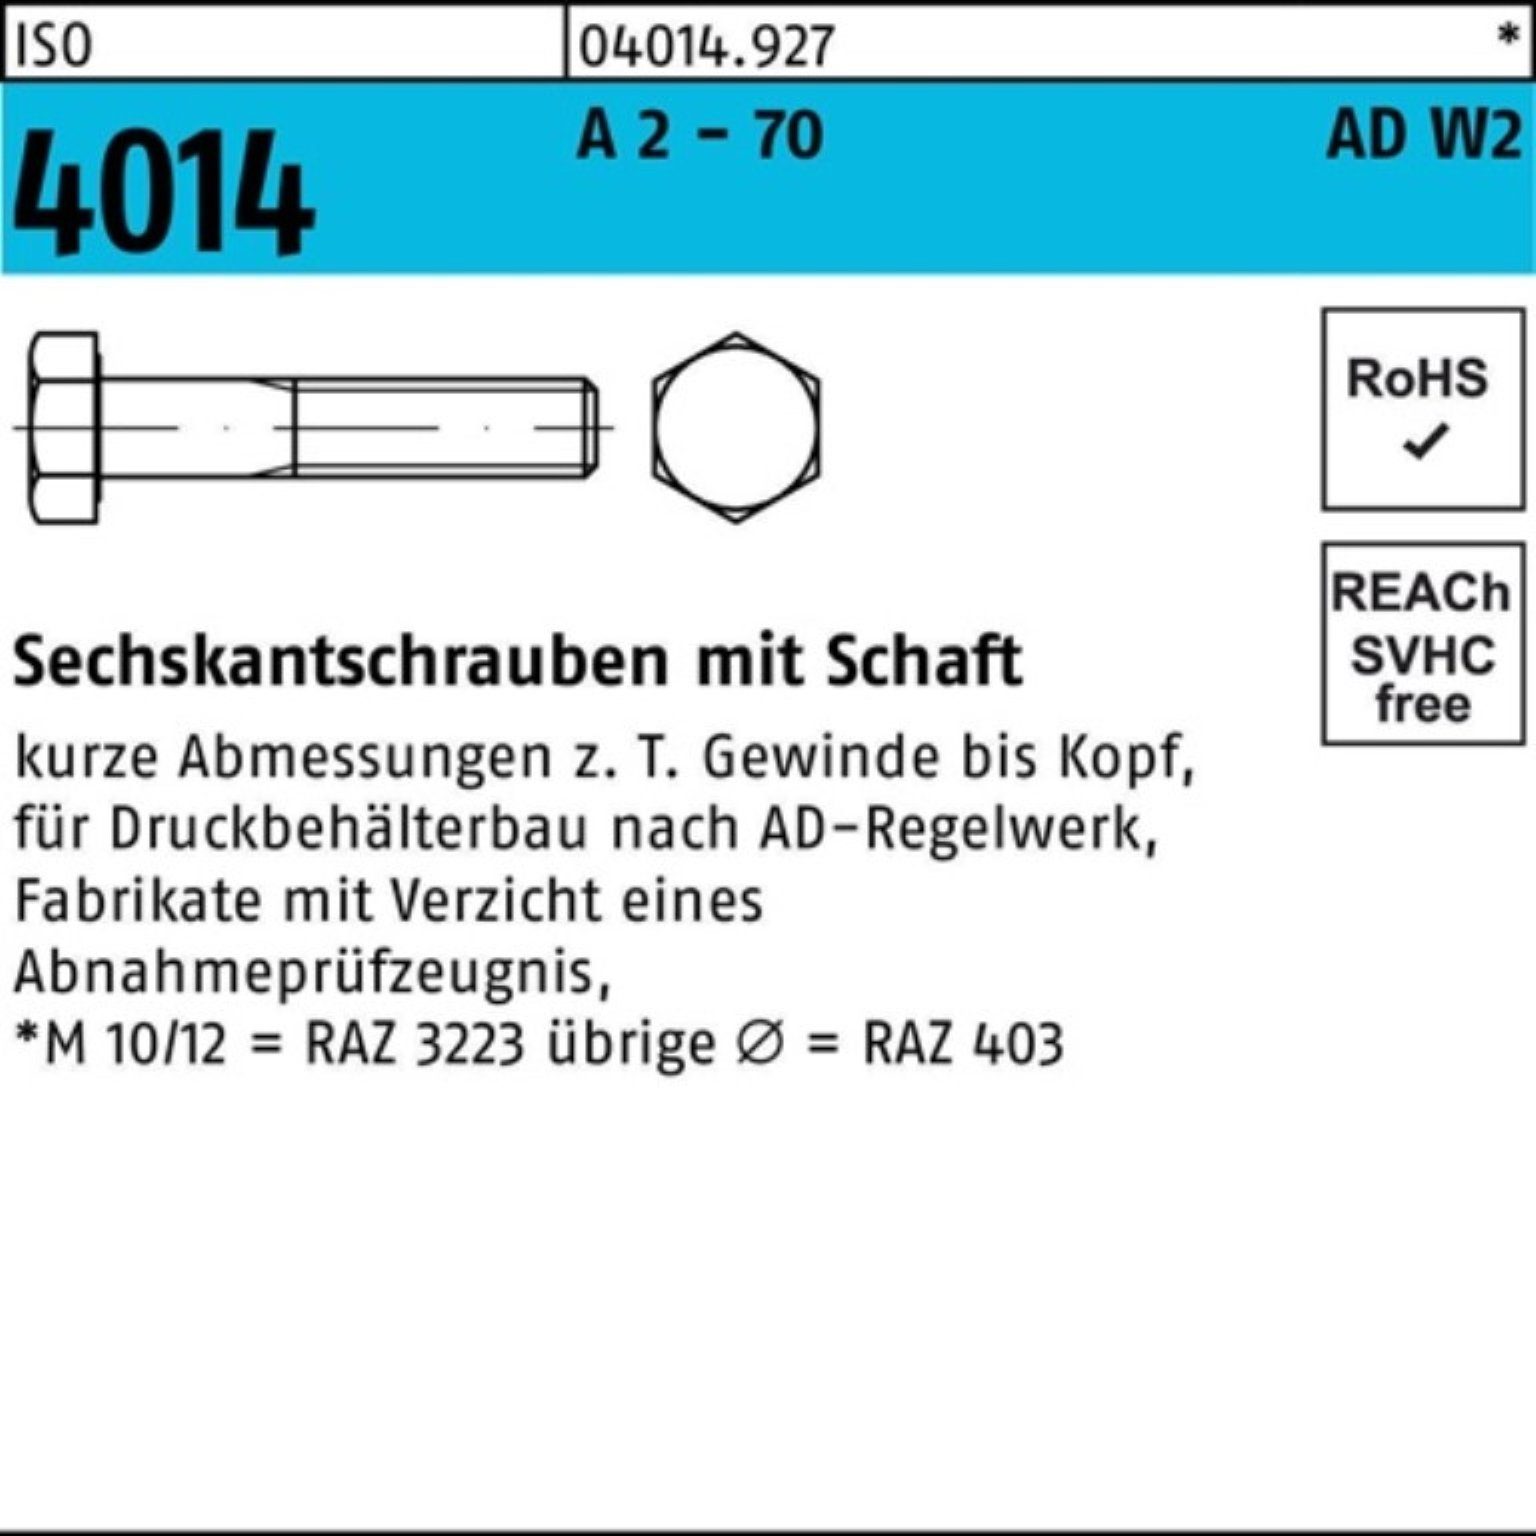 Bufab Sechskantschraube 4014 2 AD-W2 75 Schaft 50 Sechskantschraube 100er M12x - 70 Pack ISO A